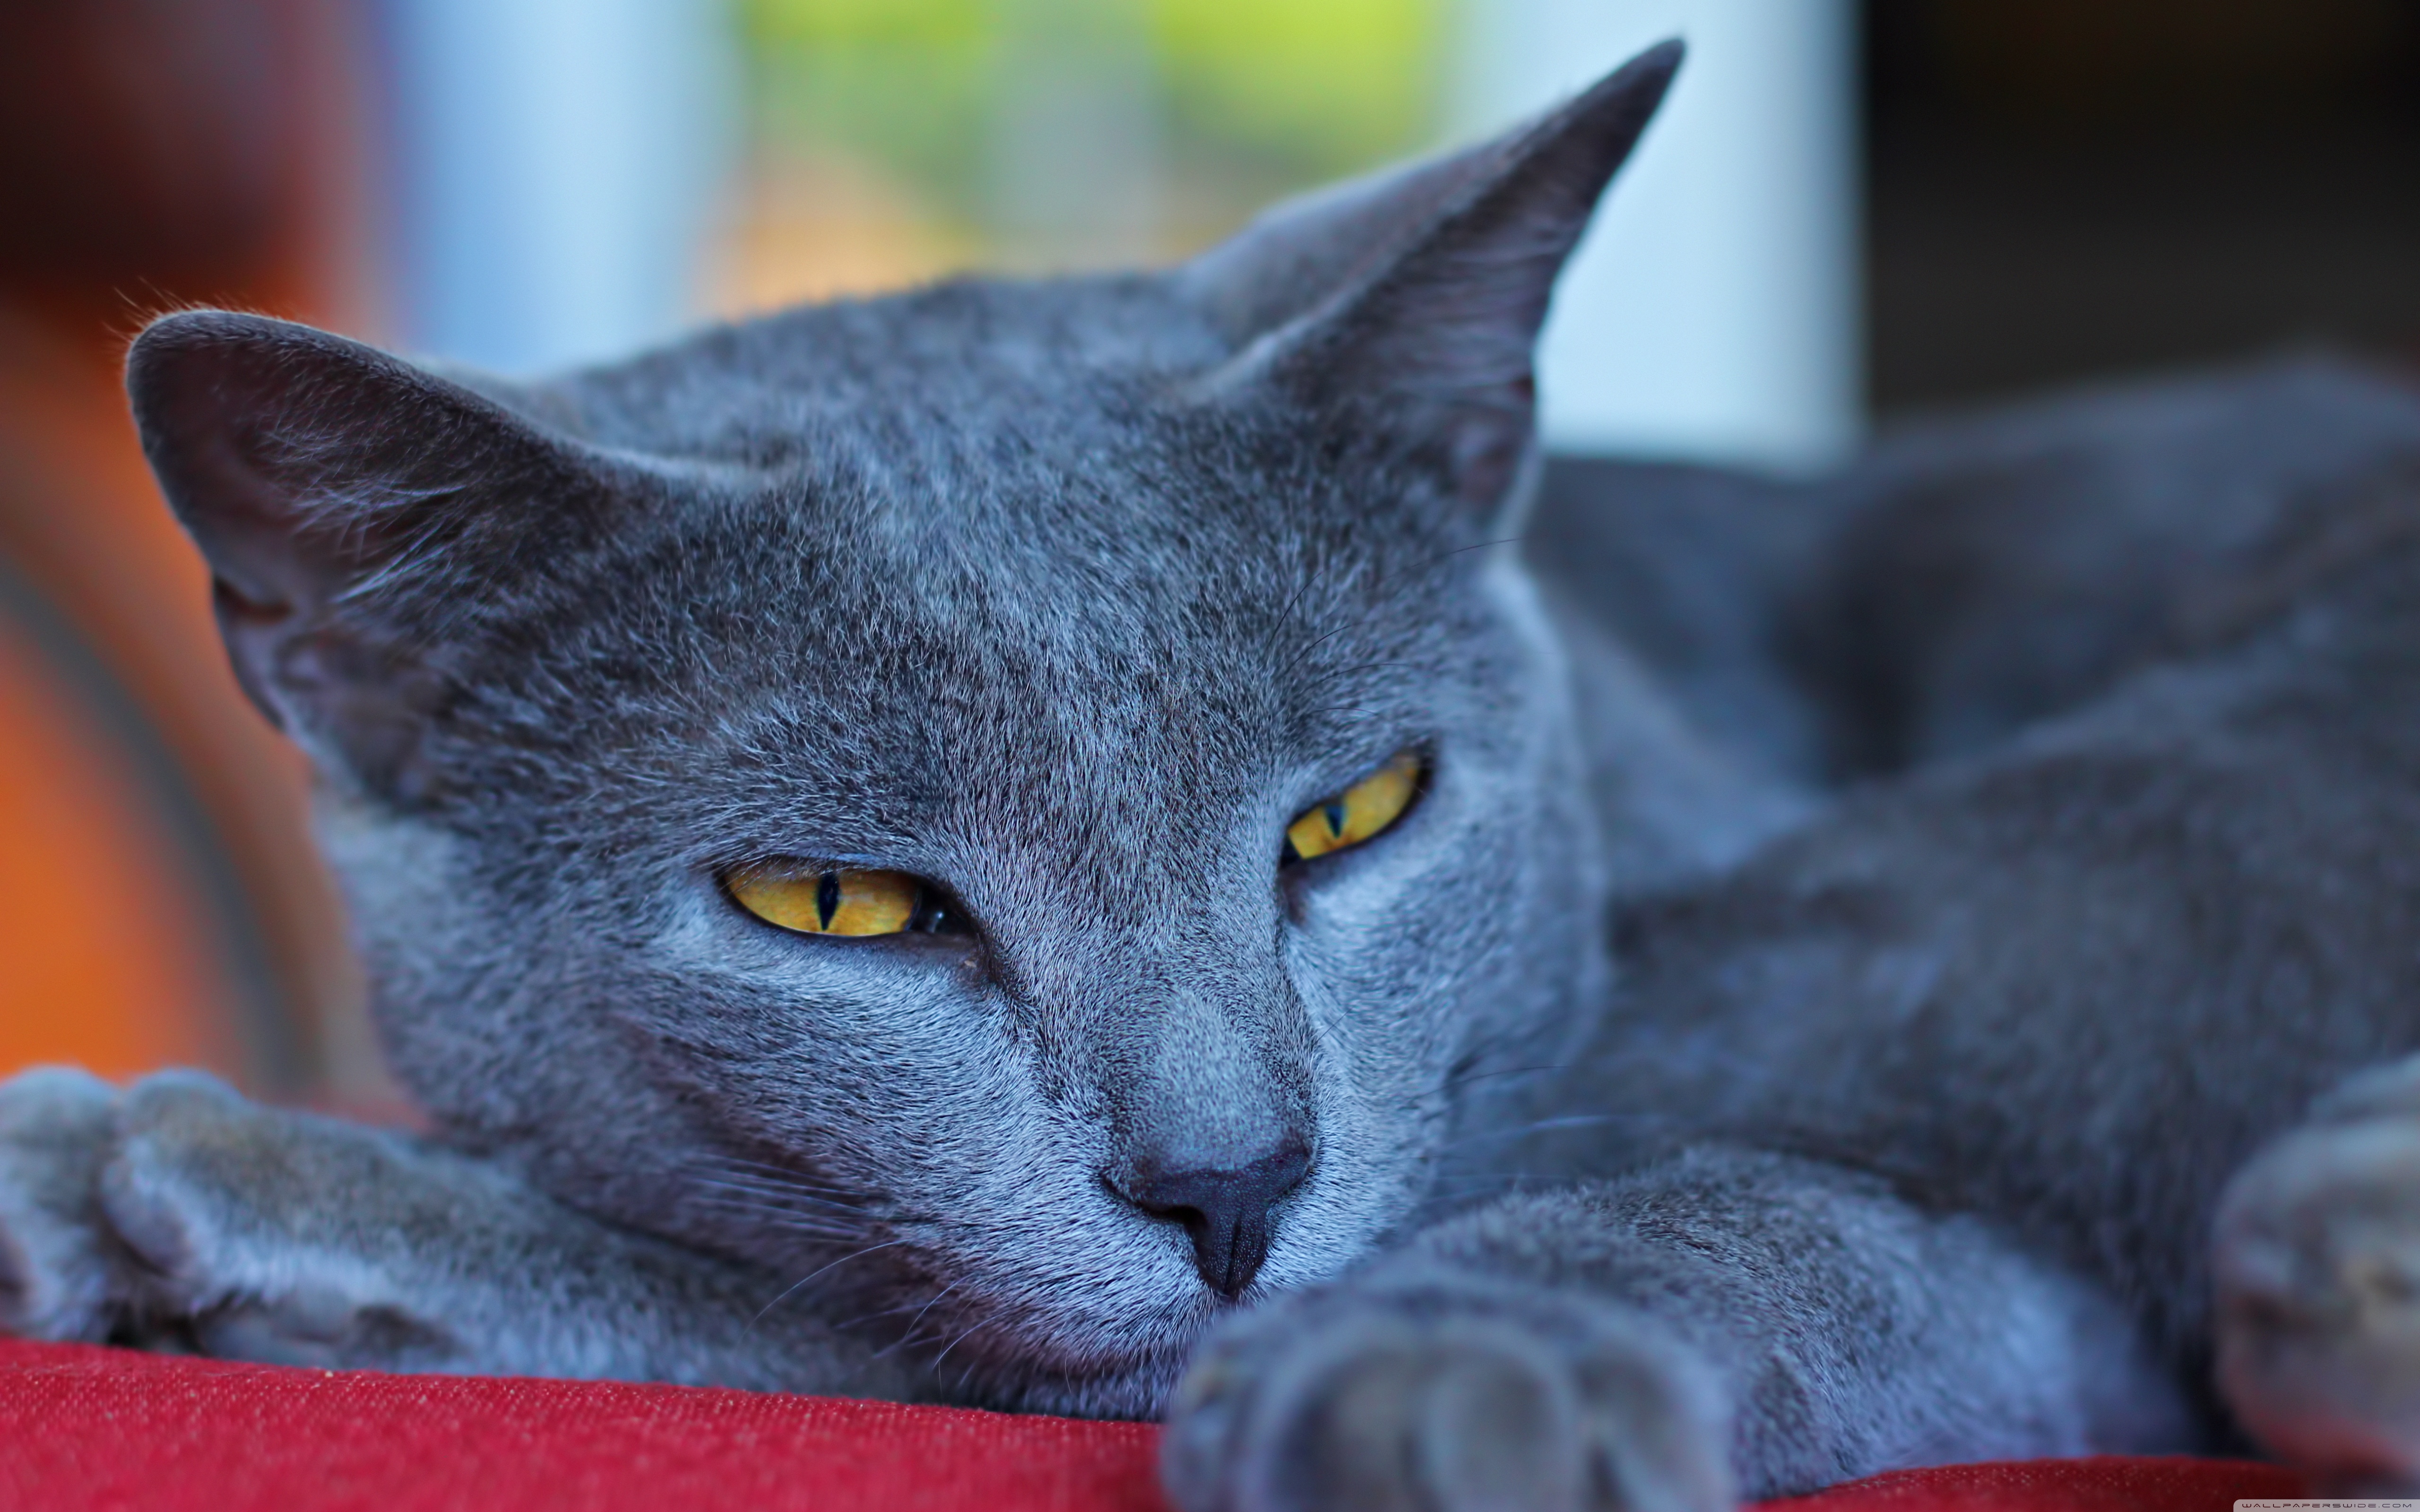 Кошка с желтыми глазами порода. Картезианская кошка шартрез. Шартрез британский голубой. Шартрез порода кошек. Британская кошка шартрез.